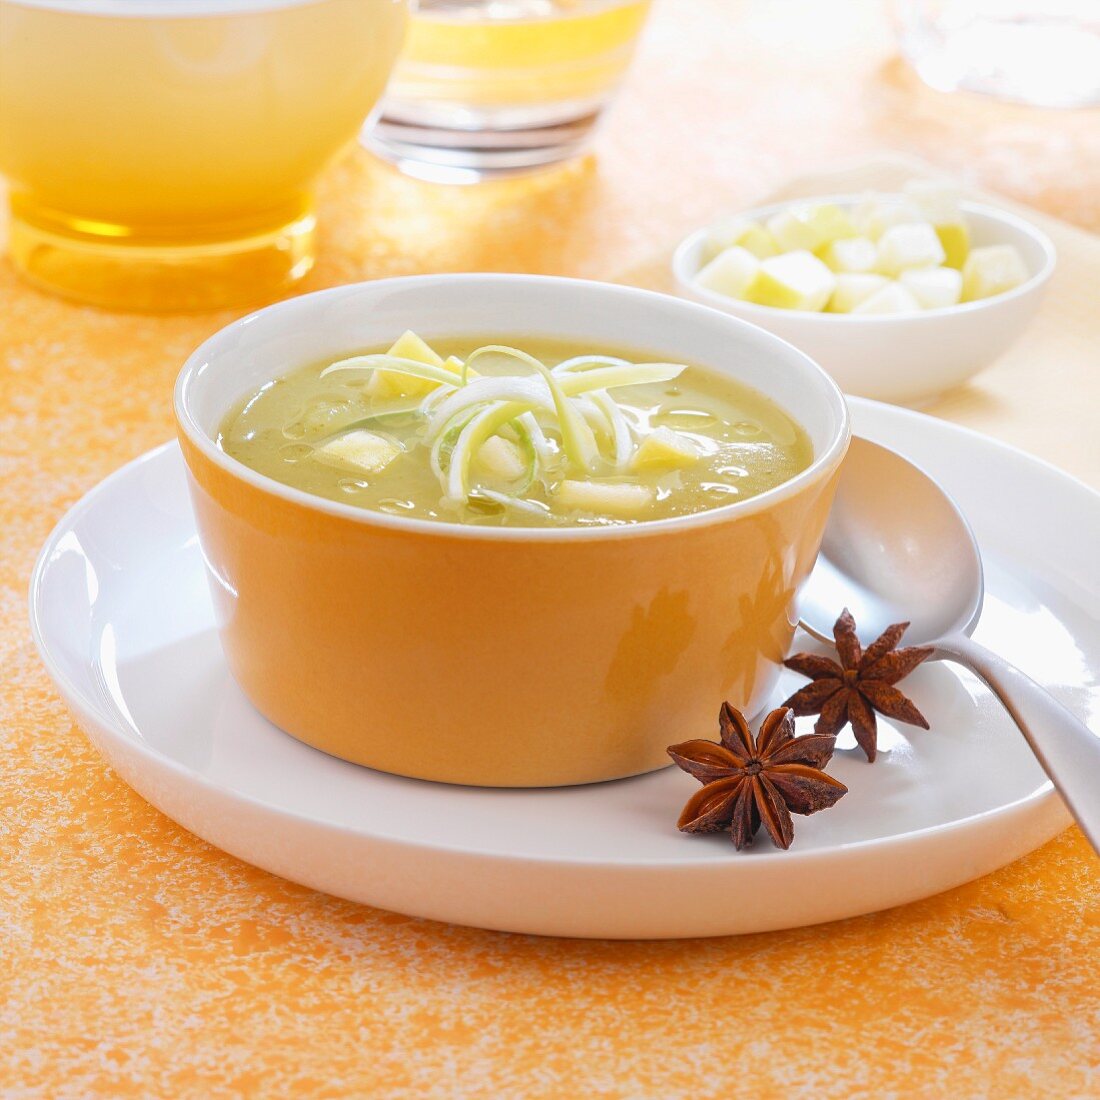 Sämige Suppe mit Lauch, Sellerie, Apfel und Sternanis